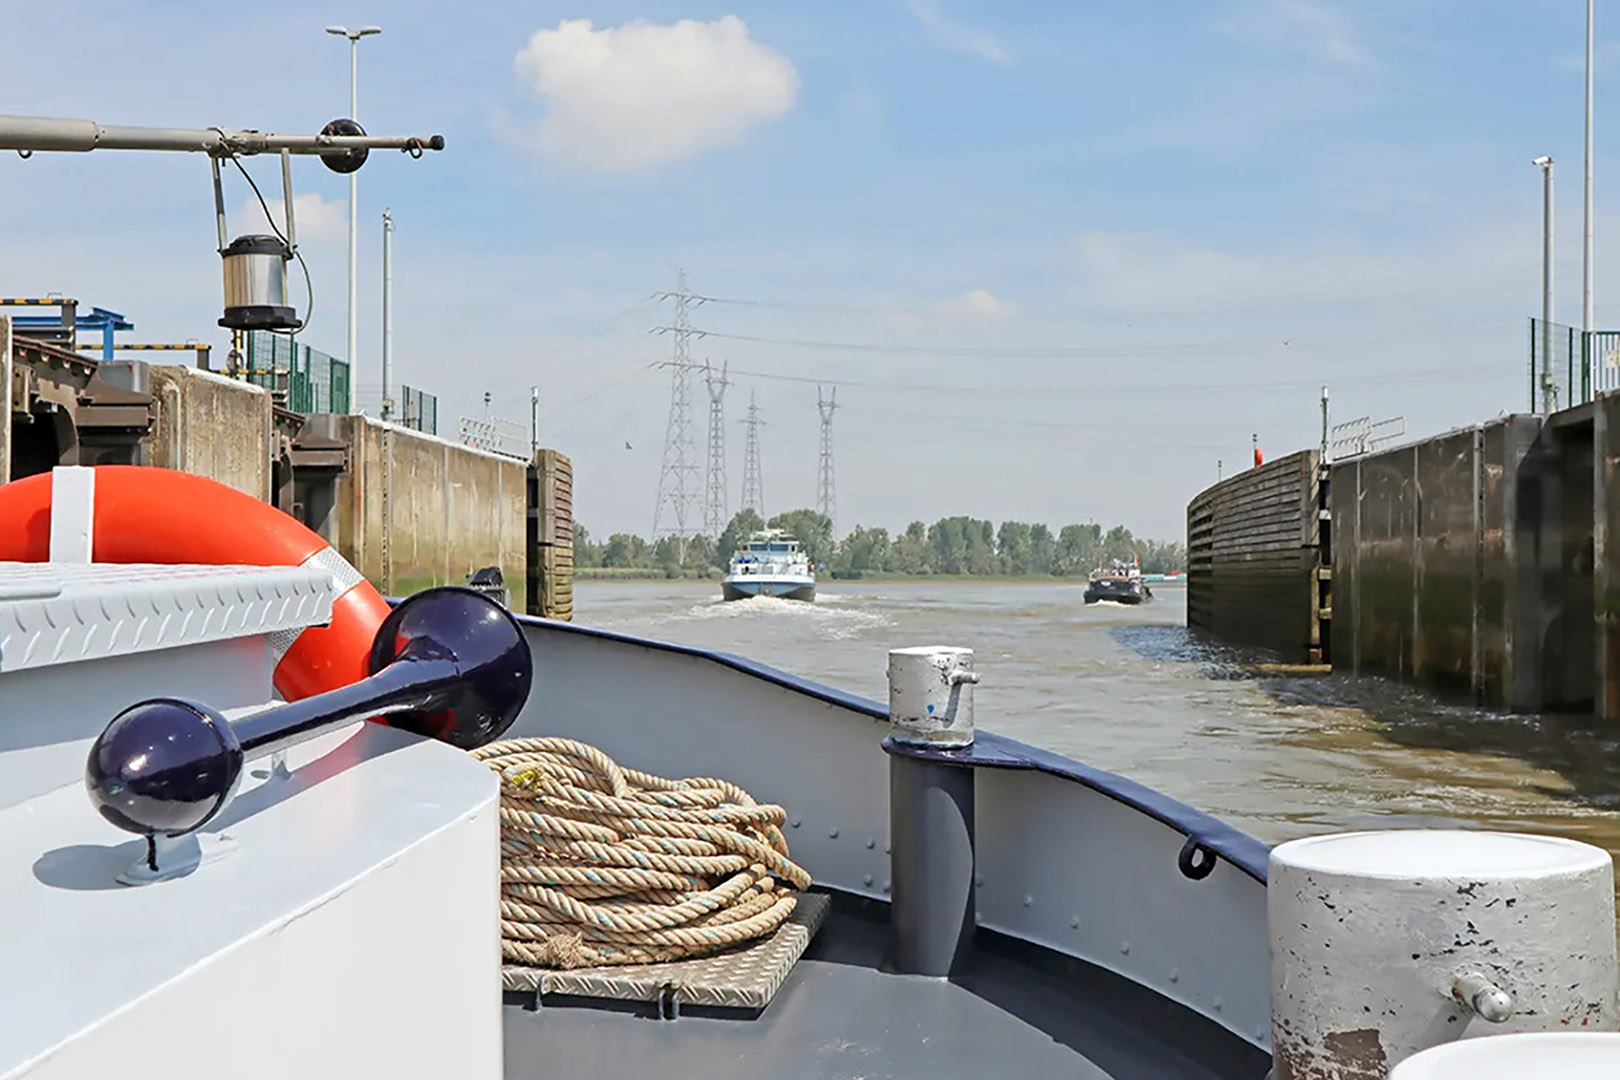 fotoreeks Boat trip from Brussels and Vilvoorde to Antwerp.